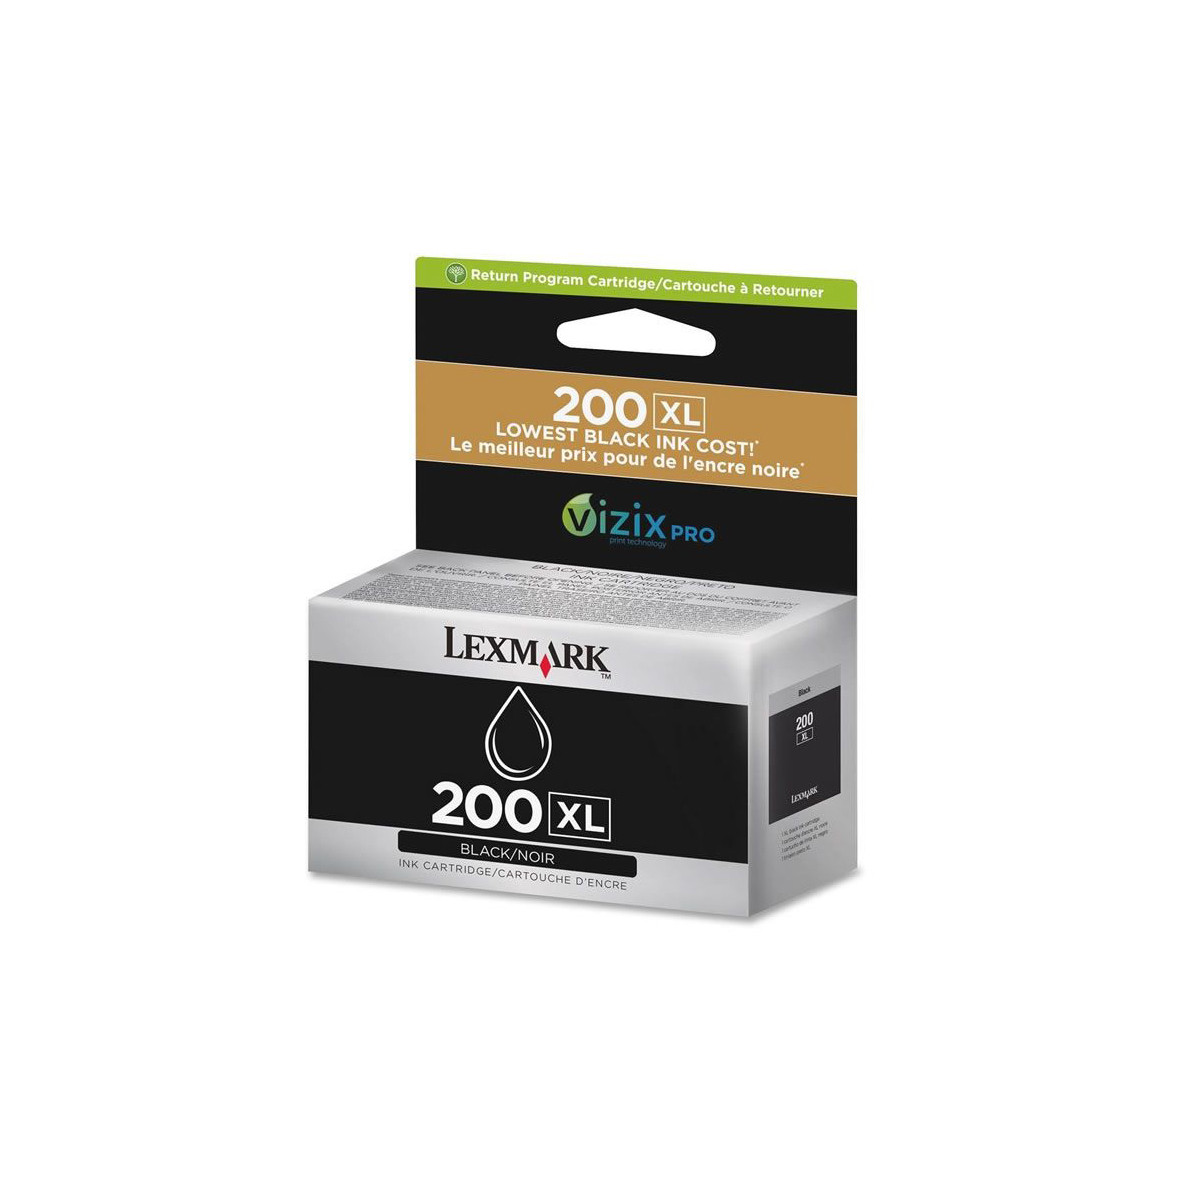 Cartucho de Tinta Lexmark 200XL 14L0174 Preto | Pro 5500 Pro 5500T Pro 4000 | Original 82,5ml